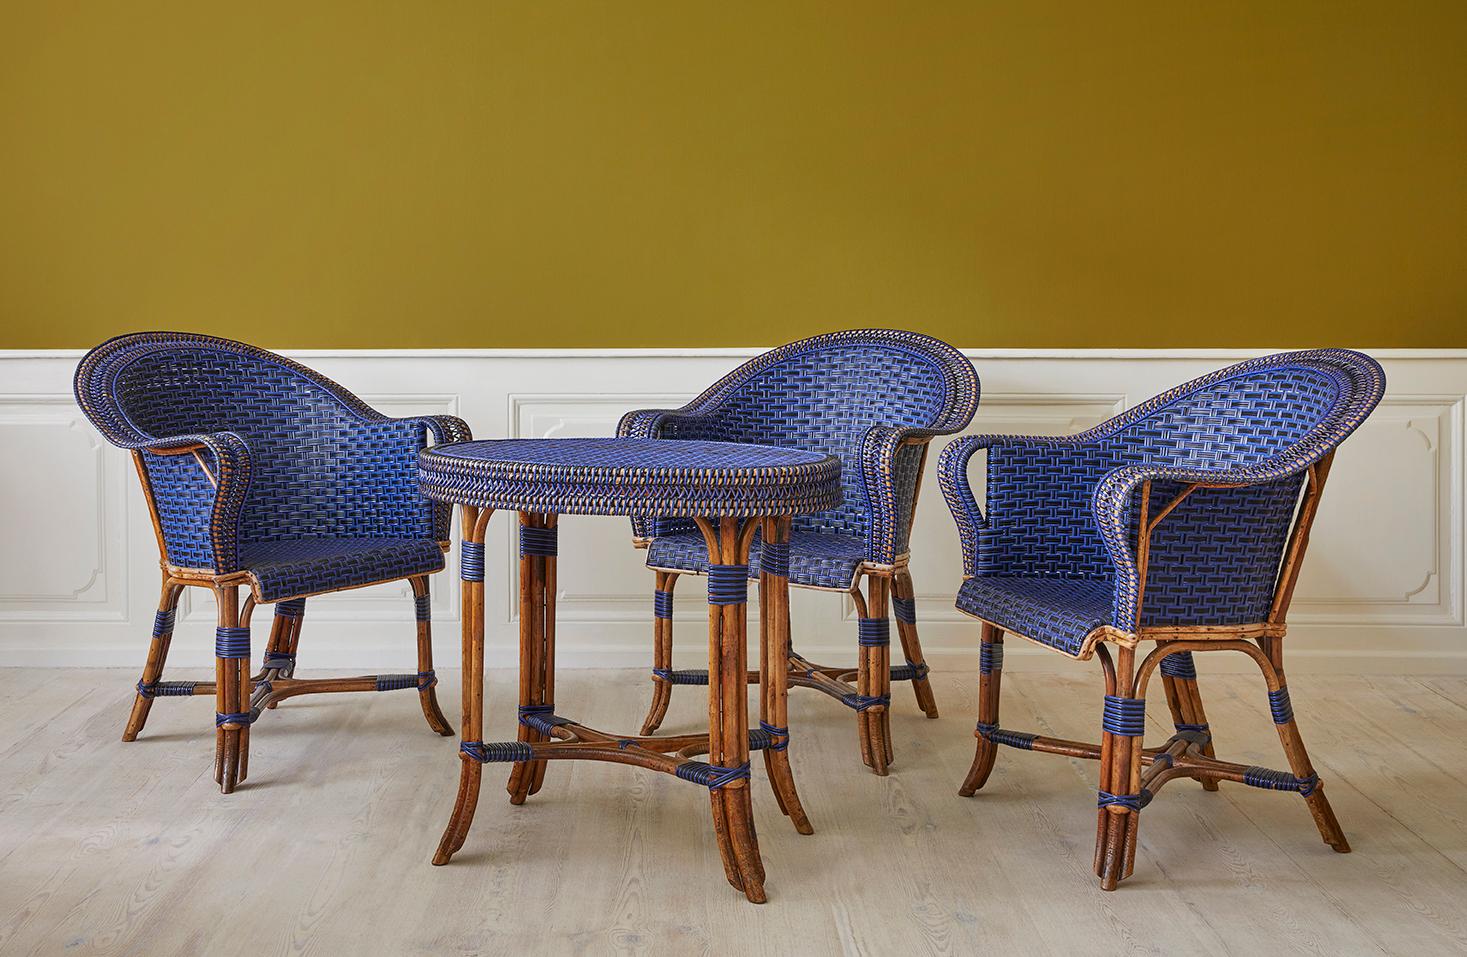 France, début du 20e siècle

Ensemble en rotin bleu et noir. Trois fauteuils et une table ovale.

Table L 75 x L 55 x H 70 cm

Chaise L 71 x P 62 x H 89 cm